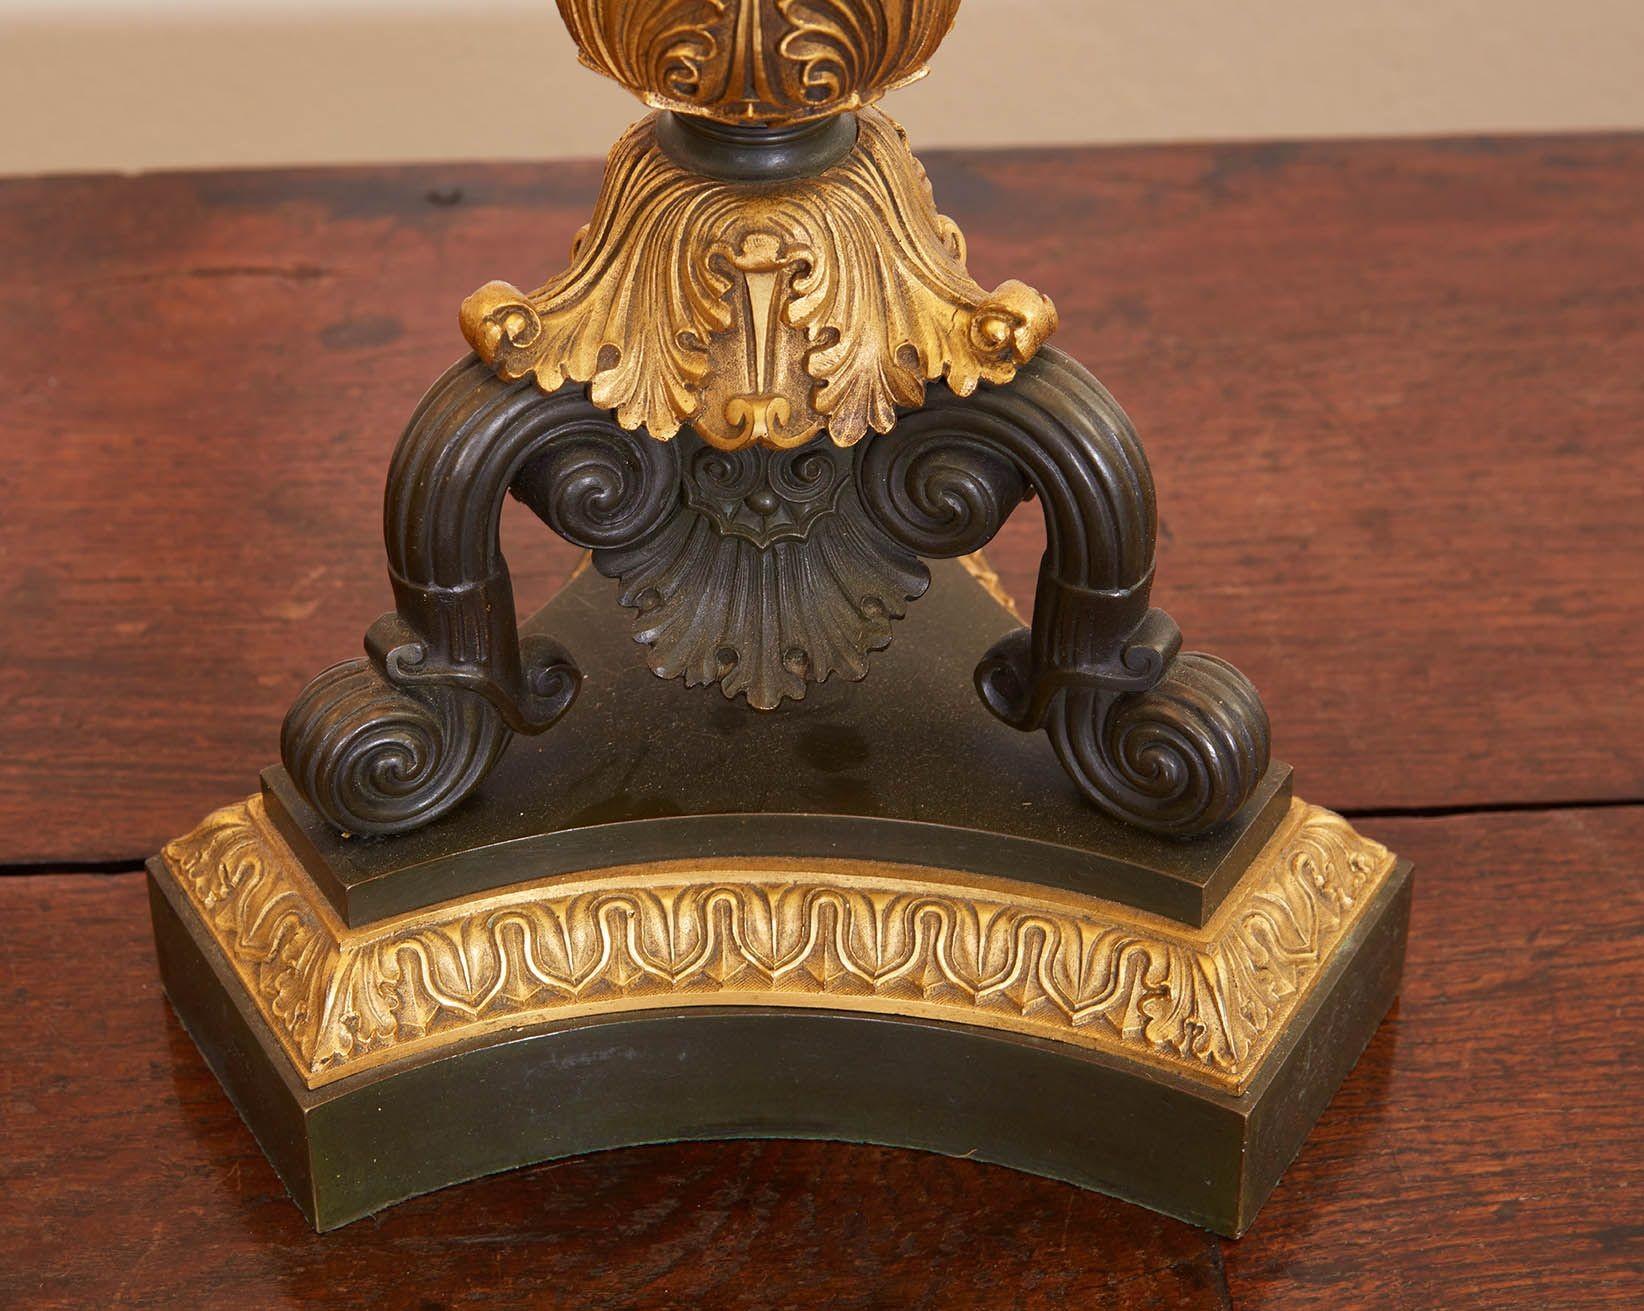 Paire de lampes de table à colonne en bronze de style néoclassique. Chaque lampe possède une colonne centrale cannelée en bronze patiné avec un chapiteau et une base en bronze doré et élaboré, reposant sur une base concave en trèfle avec trois pieds